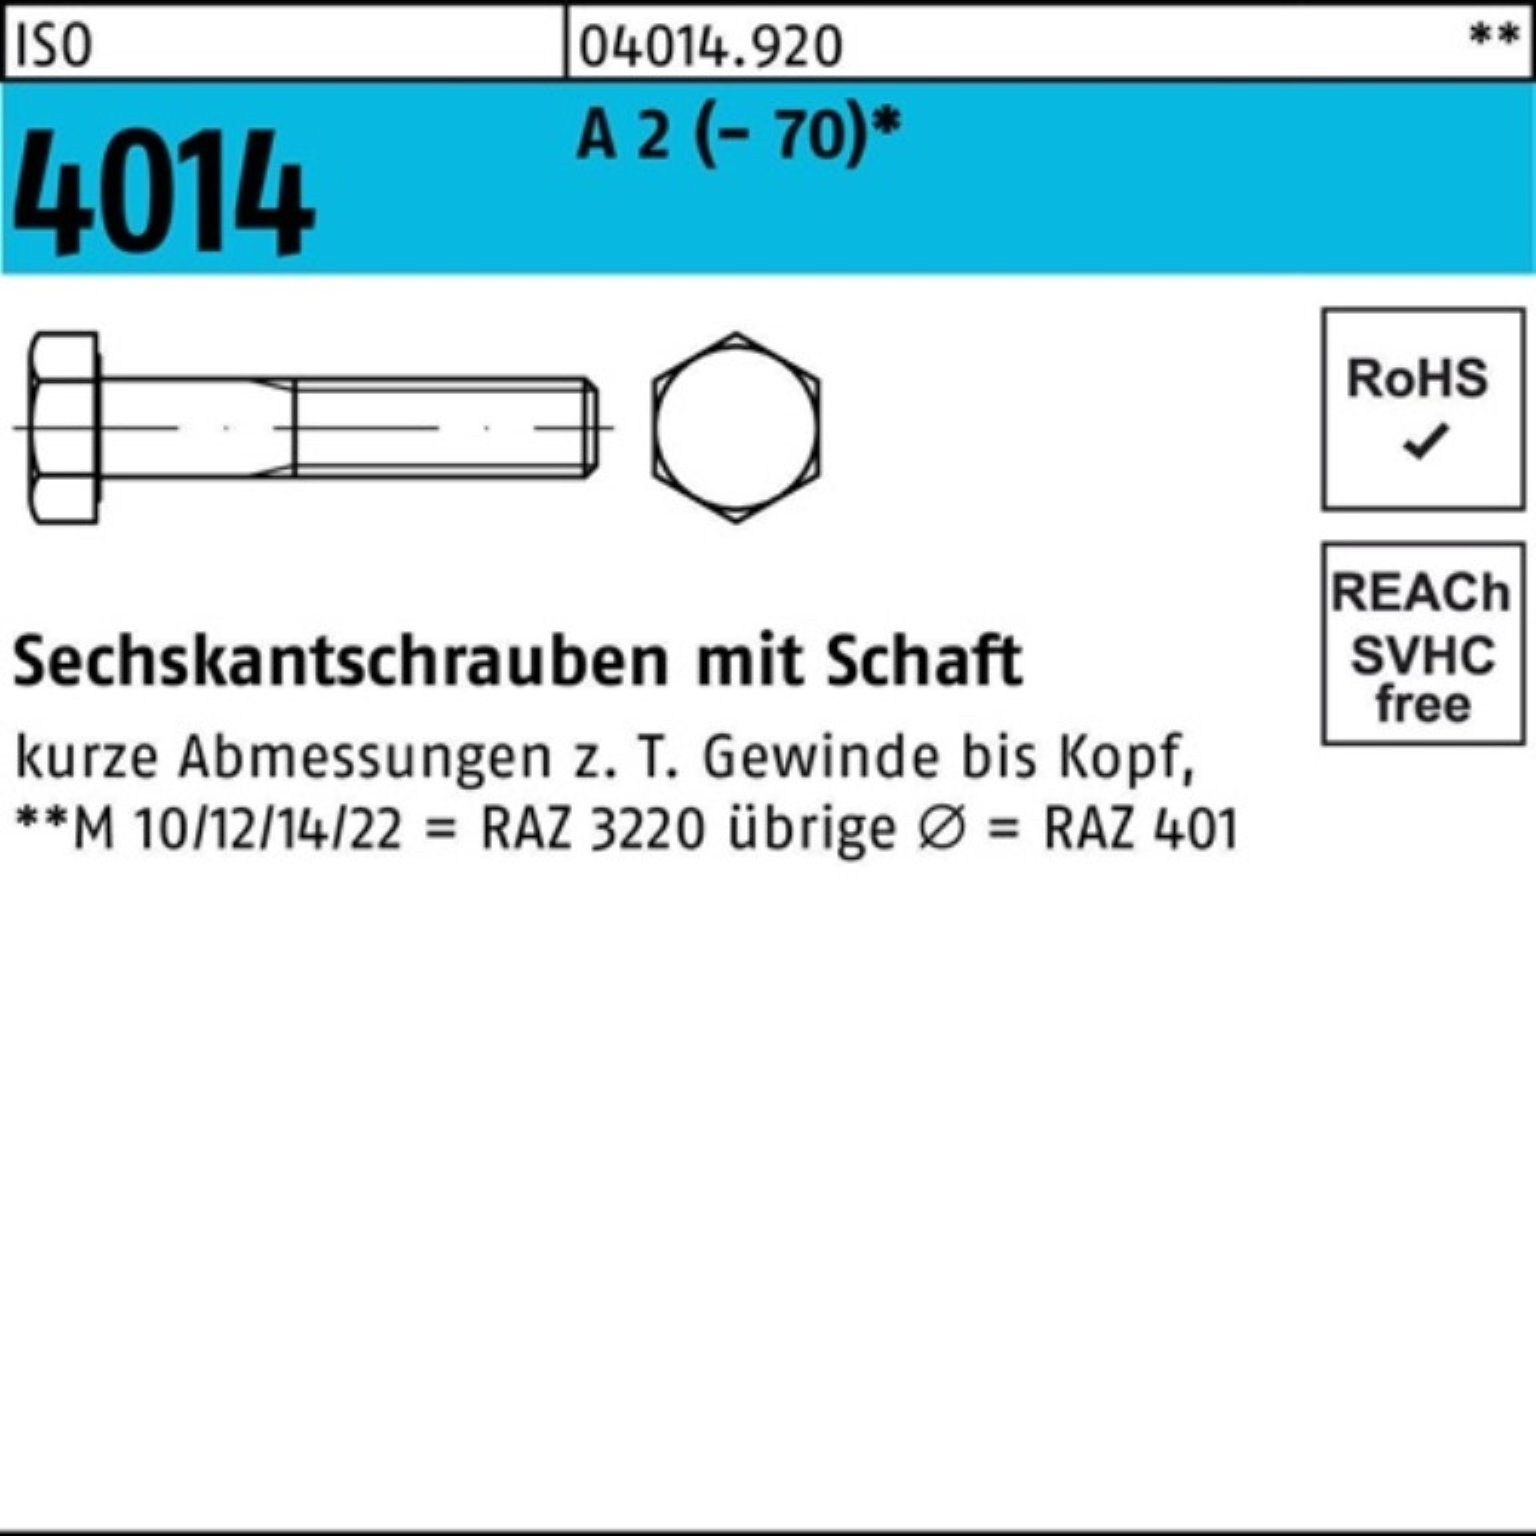 ISO M27x Sechskantschraube 1 140 Bufab A 4014 Pack (70) 100er Sechskantschraube St 2 Schaft